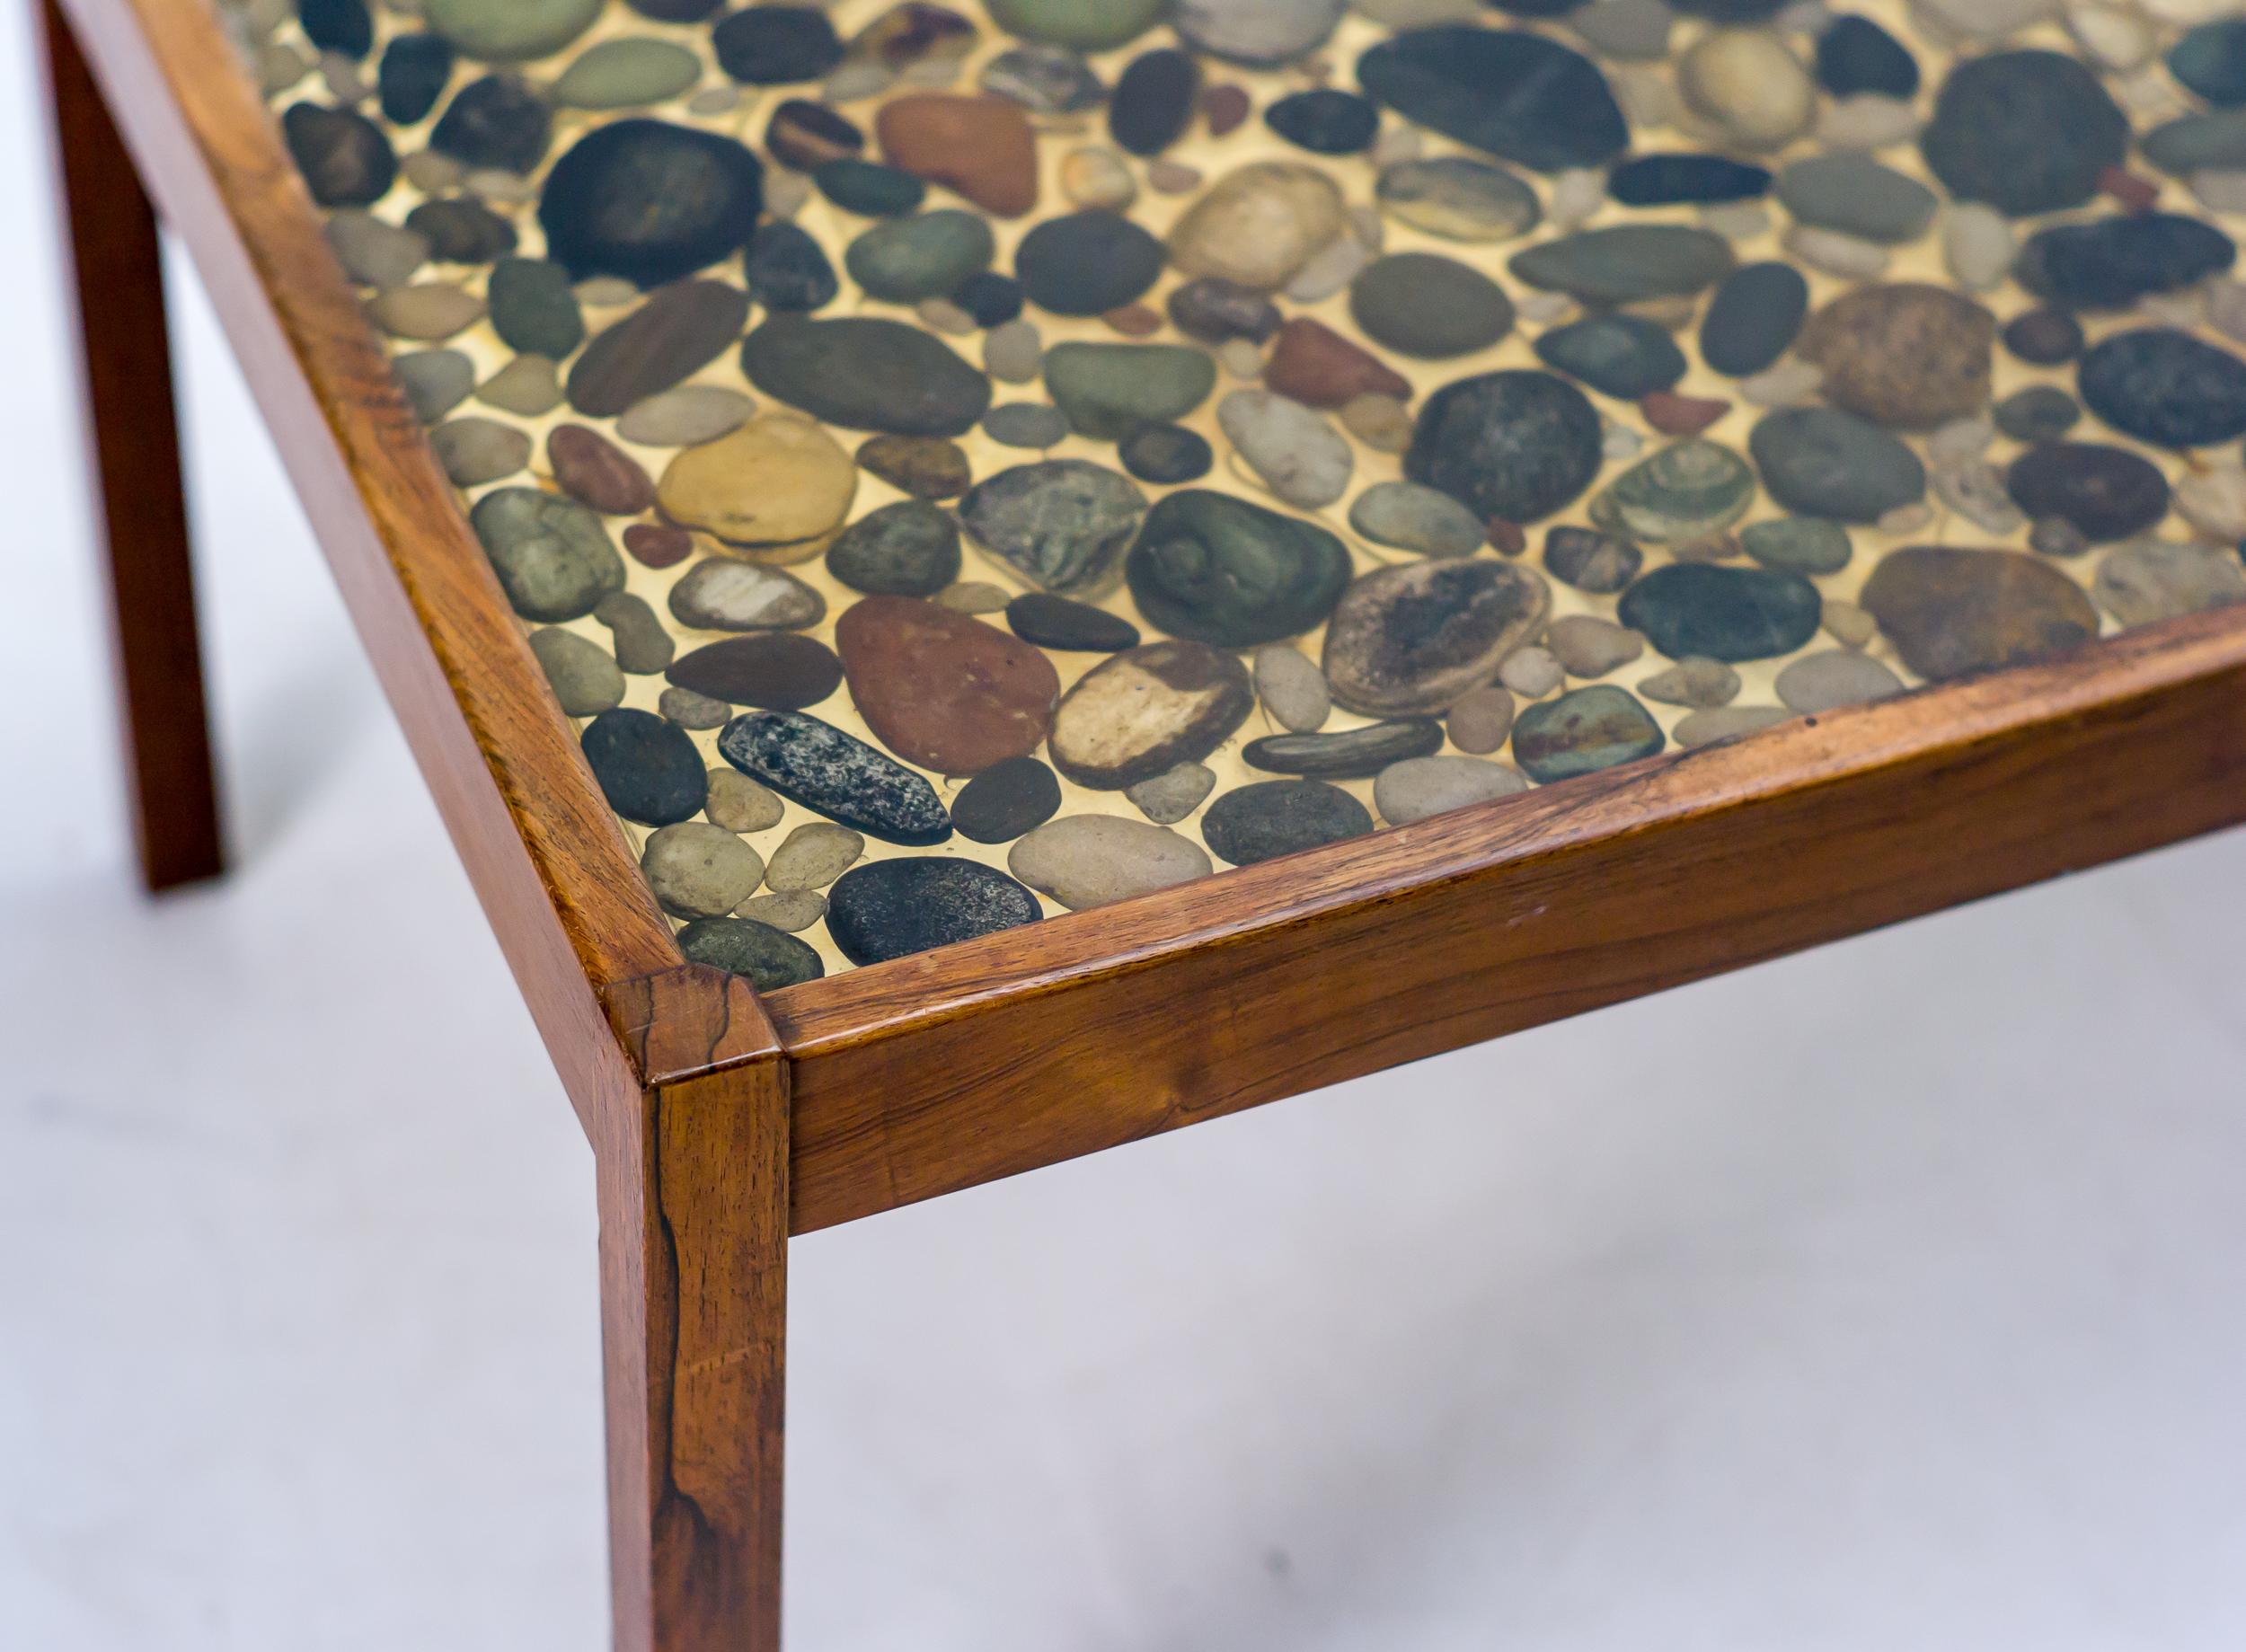 Table basse en bois de rose conçue par Ib Kofod-Larsen pour Seffle Möbelfabrik.
Table d'exception avec un plateau en polyester moulé en galets naturels.
État d'origine avec une légère usure, offrant une belle patine.

Ib Kofod-Larsen est né en 1921